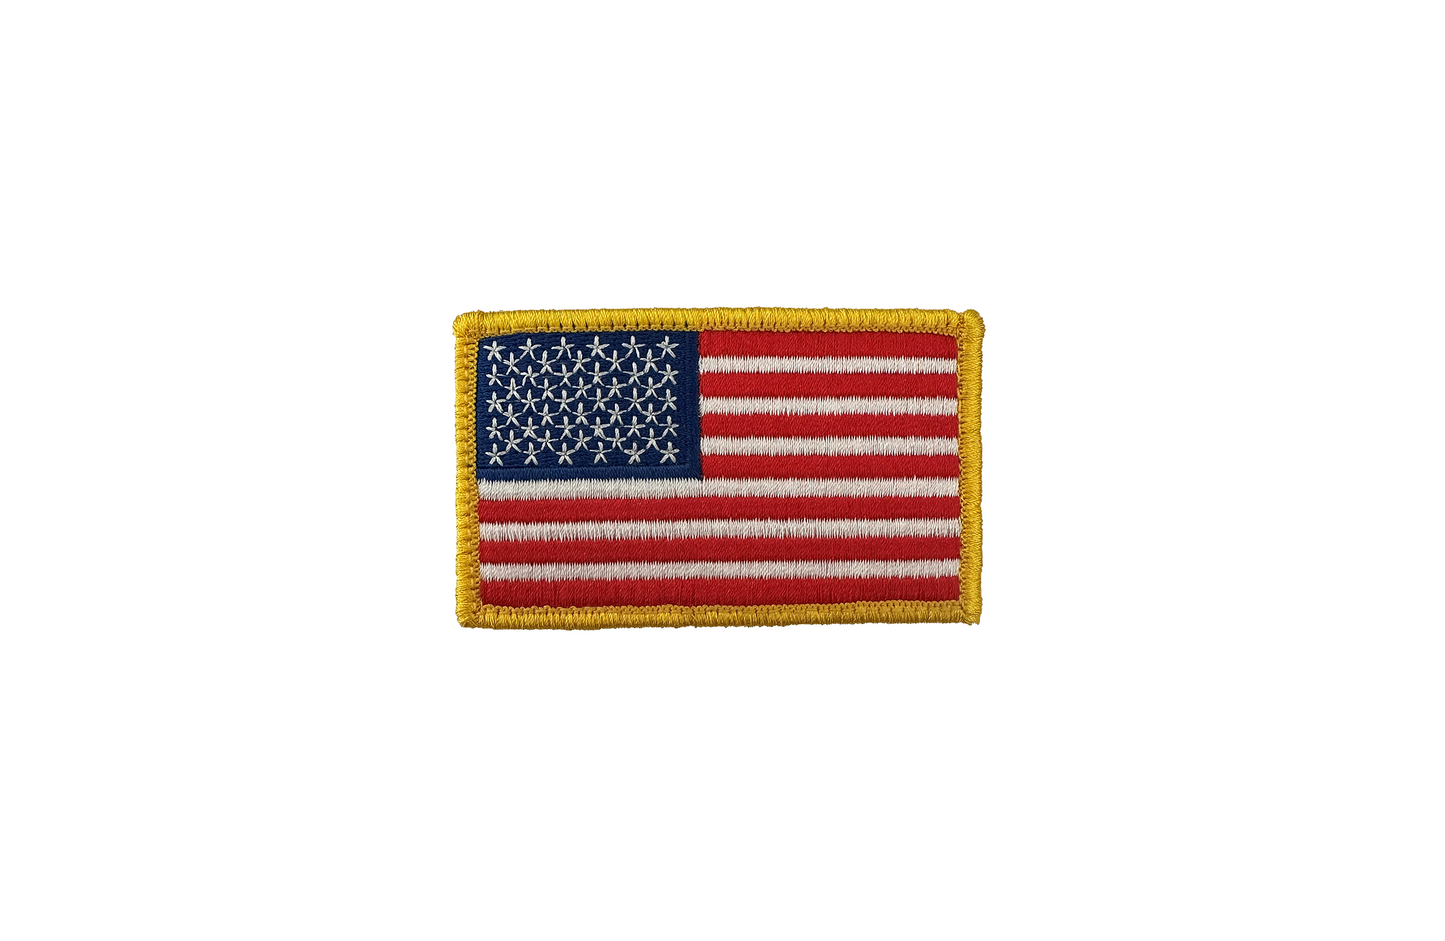 U.S. Flag Regular Color With Gold Border Patch W/ Hook Fastener